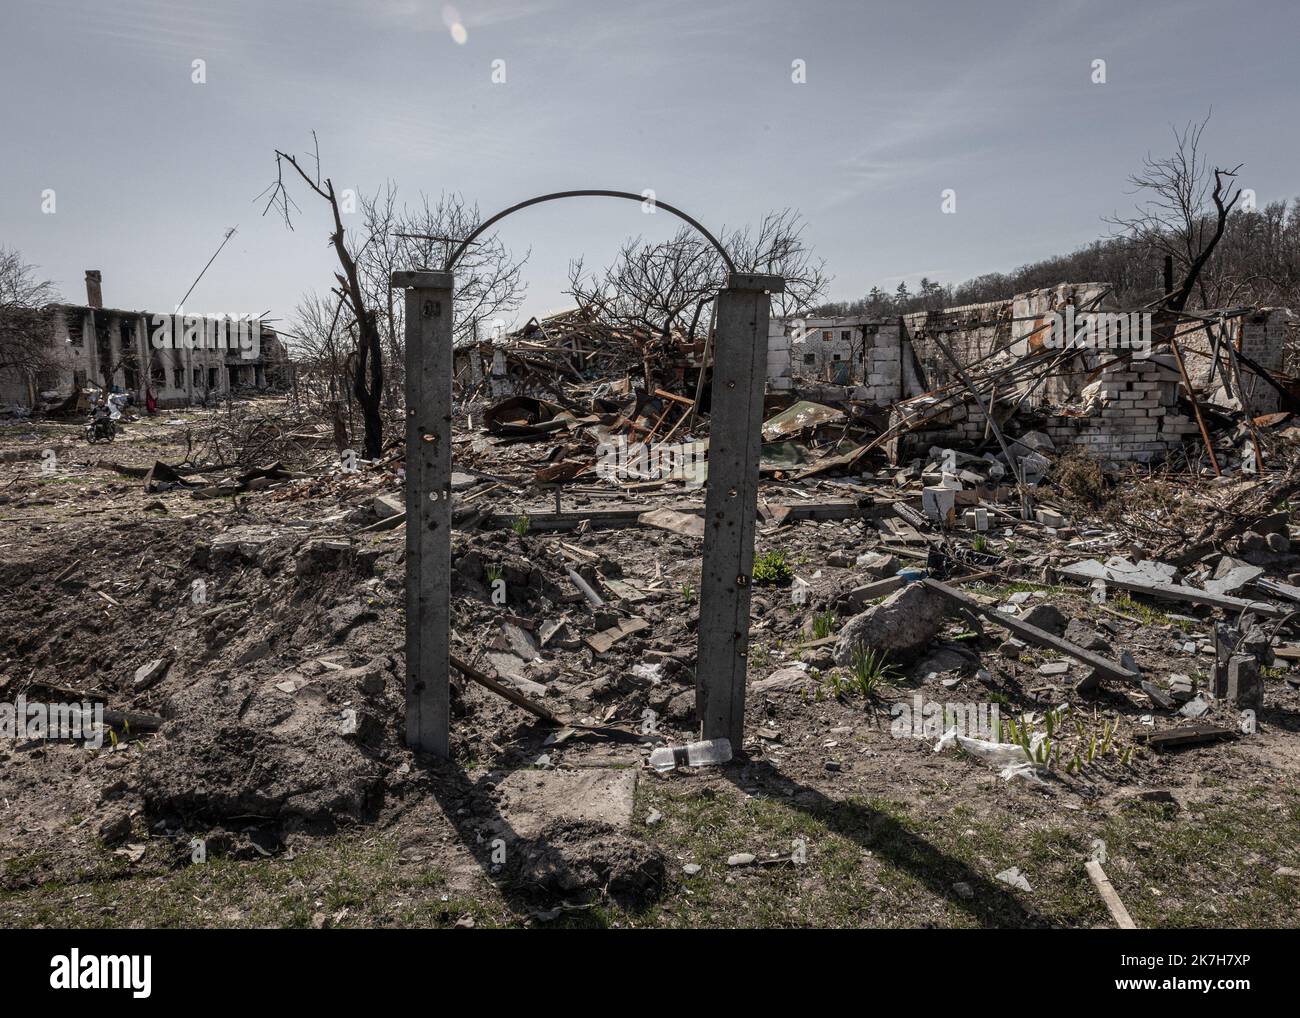 ©Sadak Souici / Le Pictorium/MAXPPP - Tchernihiv 15/04/2022 Sadak Souici / Le Pictorium - 15/4/2022 - Ukraine / Tchernihiv - Les restes d'une maison touchee par d'intens Bombardements dans le quartier de Novoselivka, a Tchernihiv. Tchernihiv, au nord est de Kiew proche de la frontiere avec la bielorussie, a subit de plein fouet l'avancee russe. Bombardee de maniere intensive, les envahisseurs tenterent dix fois, en vain, d'occuper la ville. Une Operation qui couta tres cher a la ville, donnant lieu a des Quartiers entierement detruits, des immeubles eventres, et des vies brenners. Selon le go Stockfoto